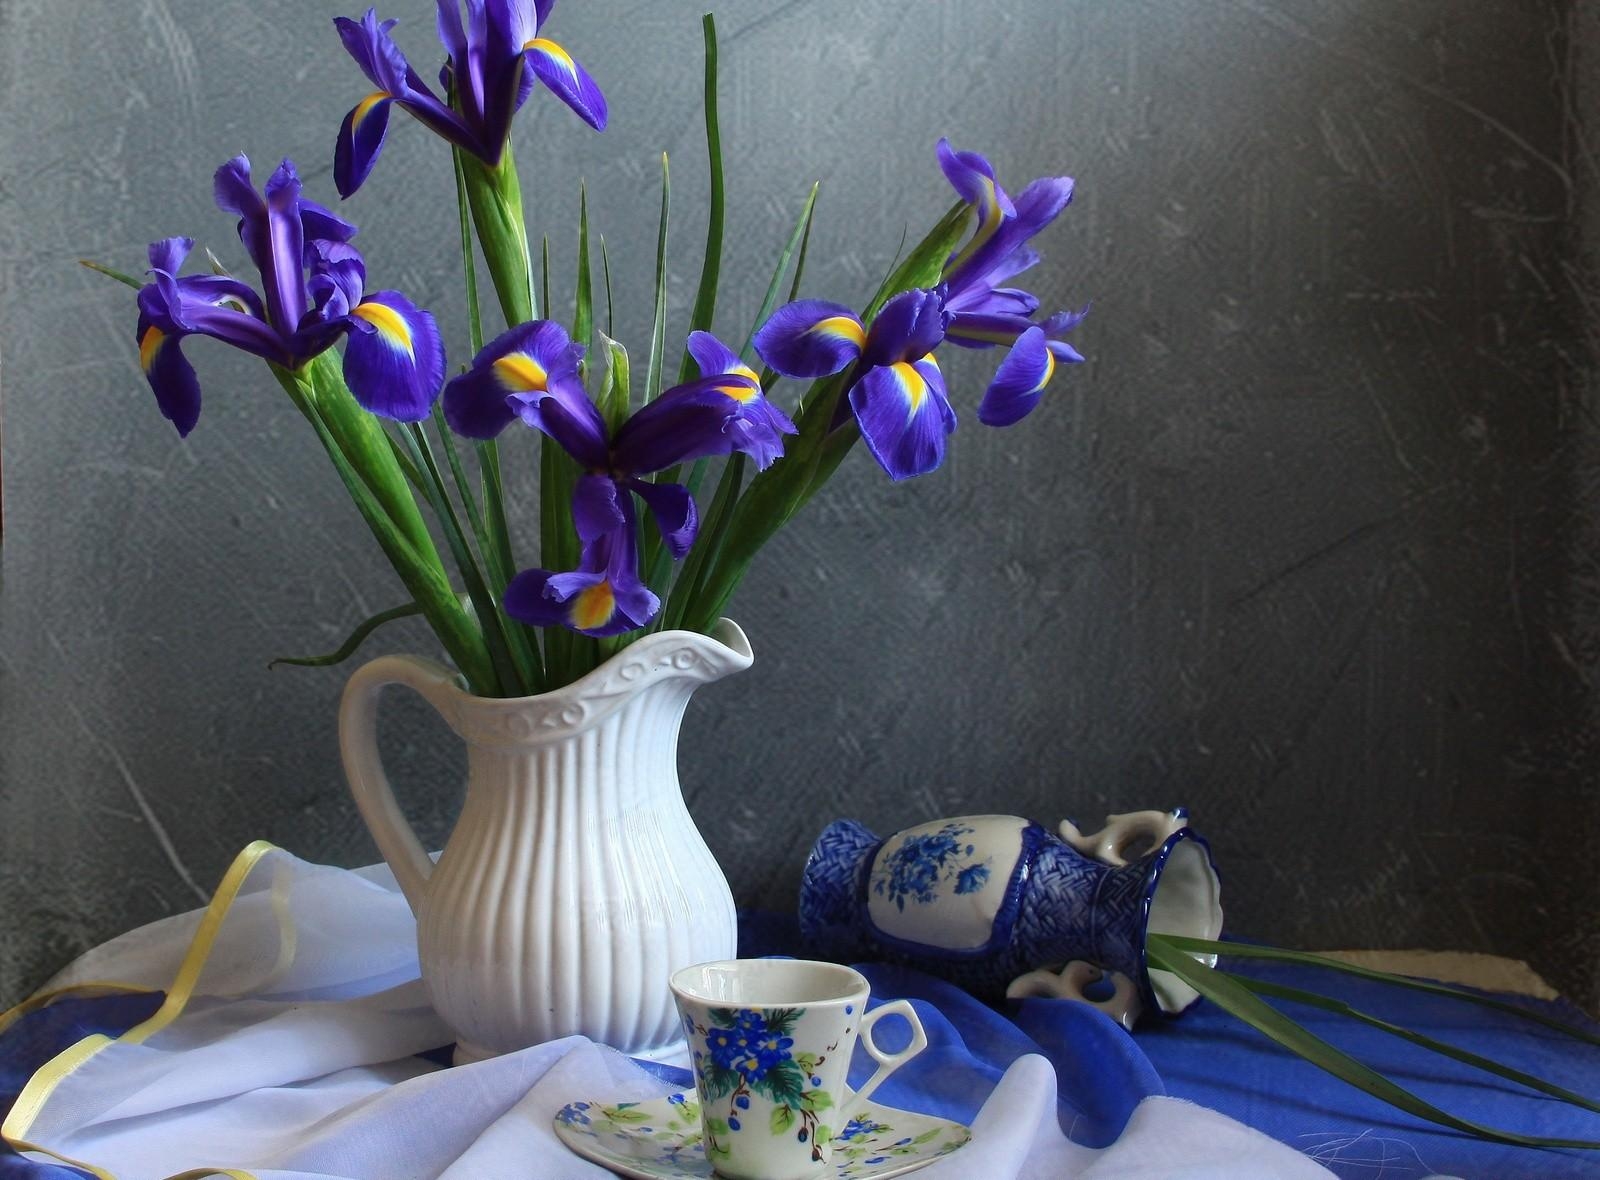 android tea pair, flowers, jug, irises, tablecloth